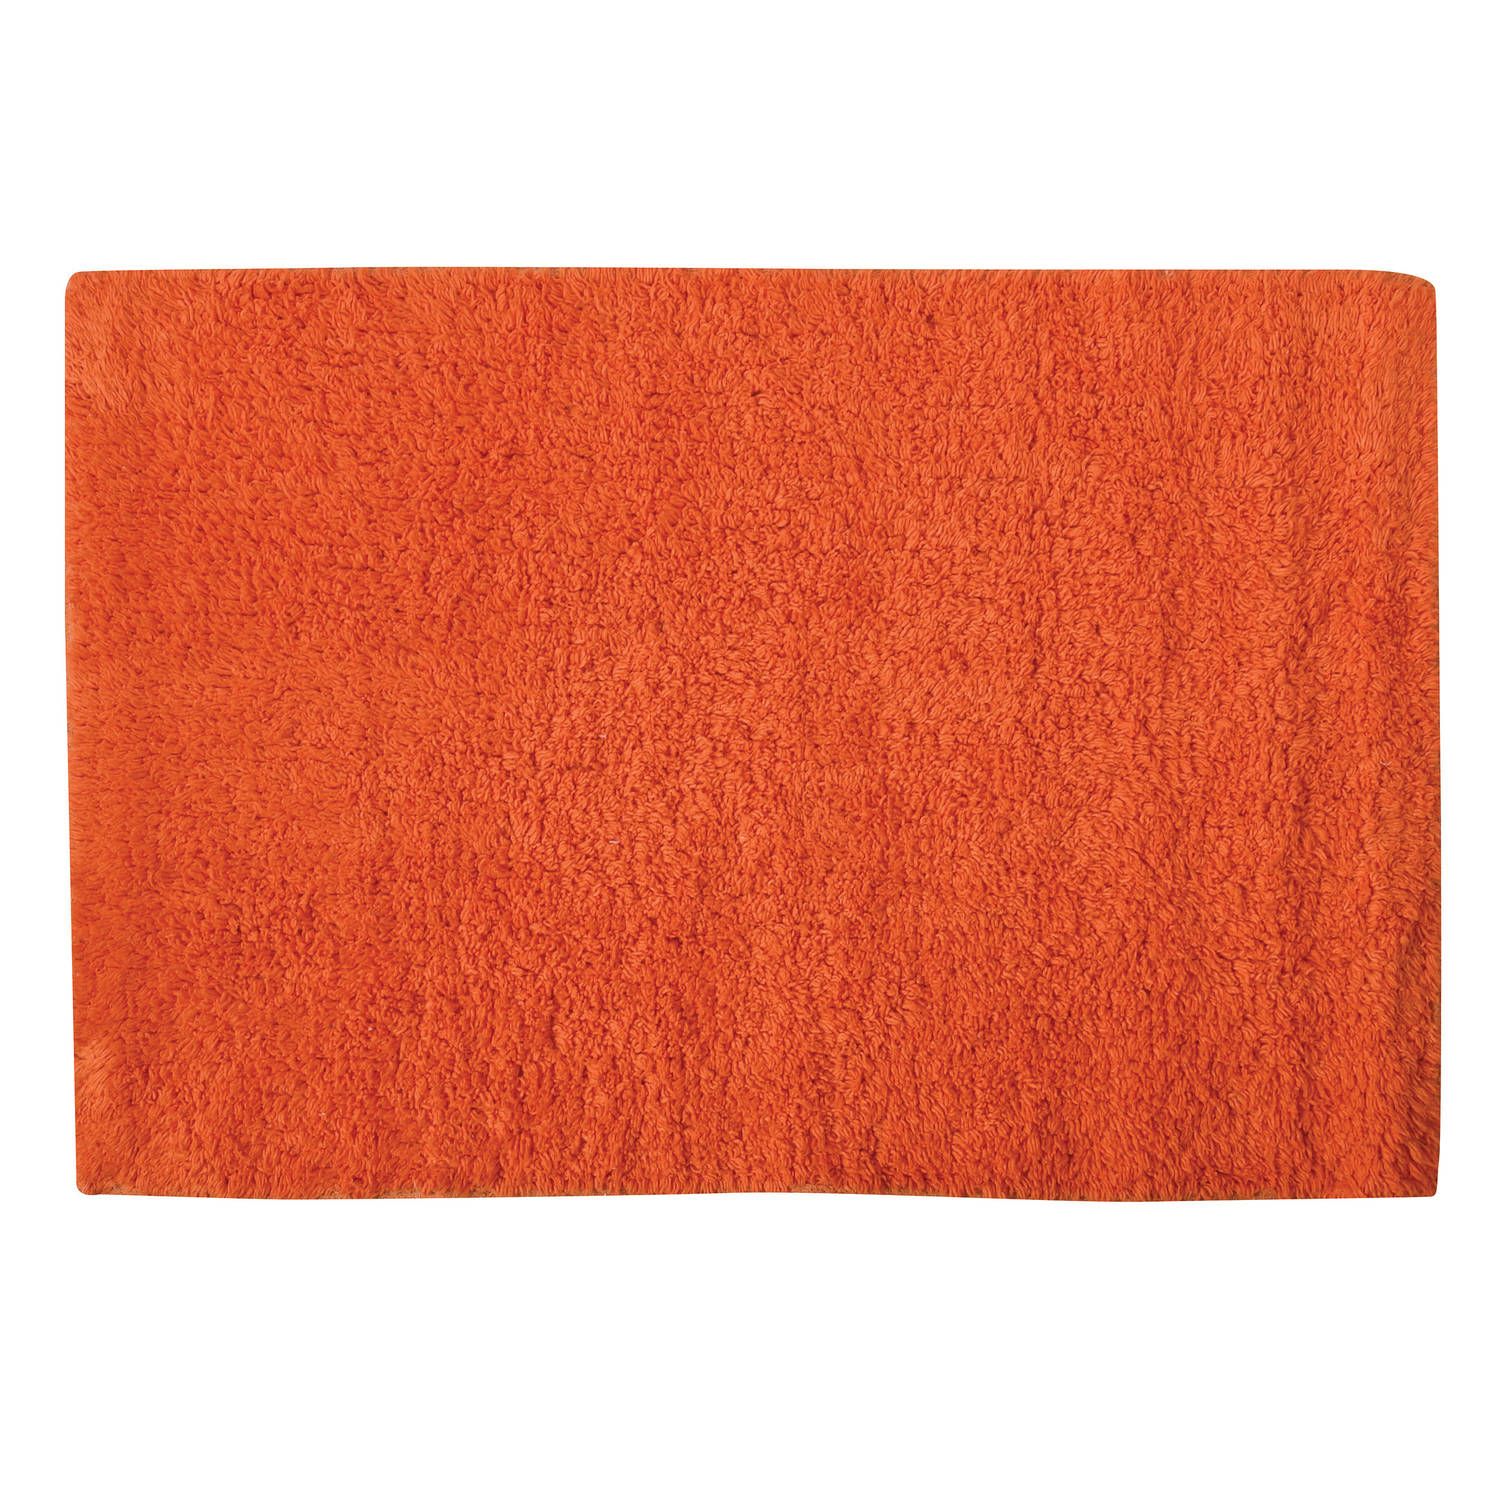 MSV Badkamerkleedje/badmat tapijtje - voor op de vloer - oranje - 40 x 60 cm - polyester/katoen